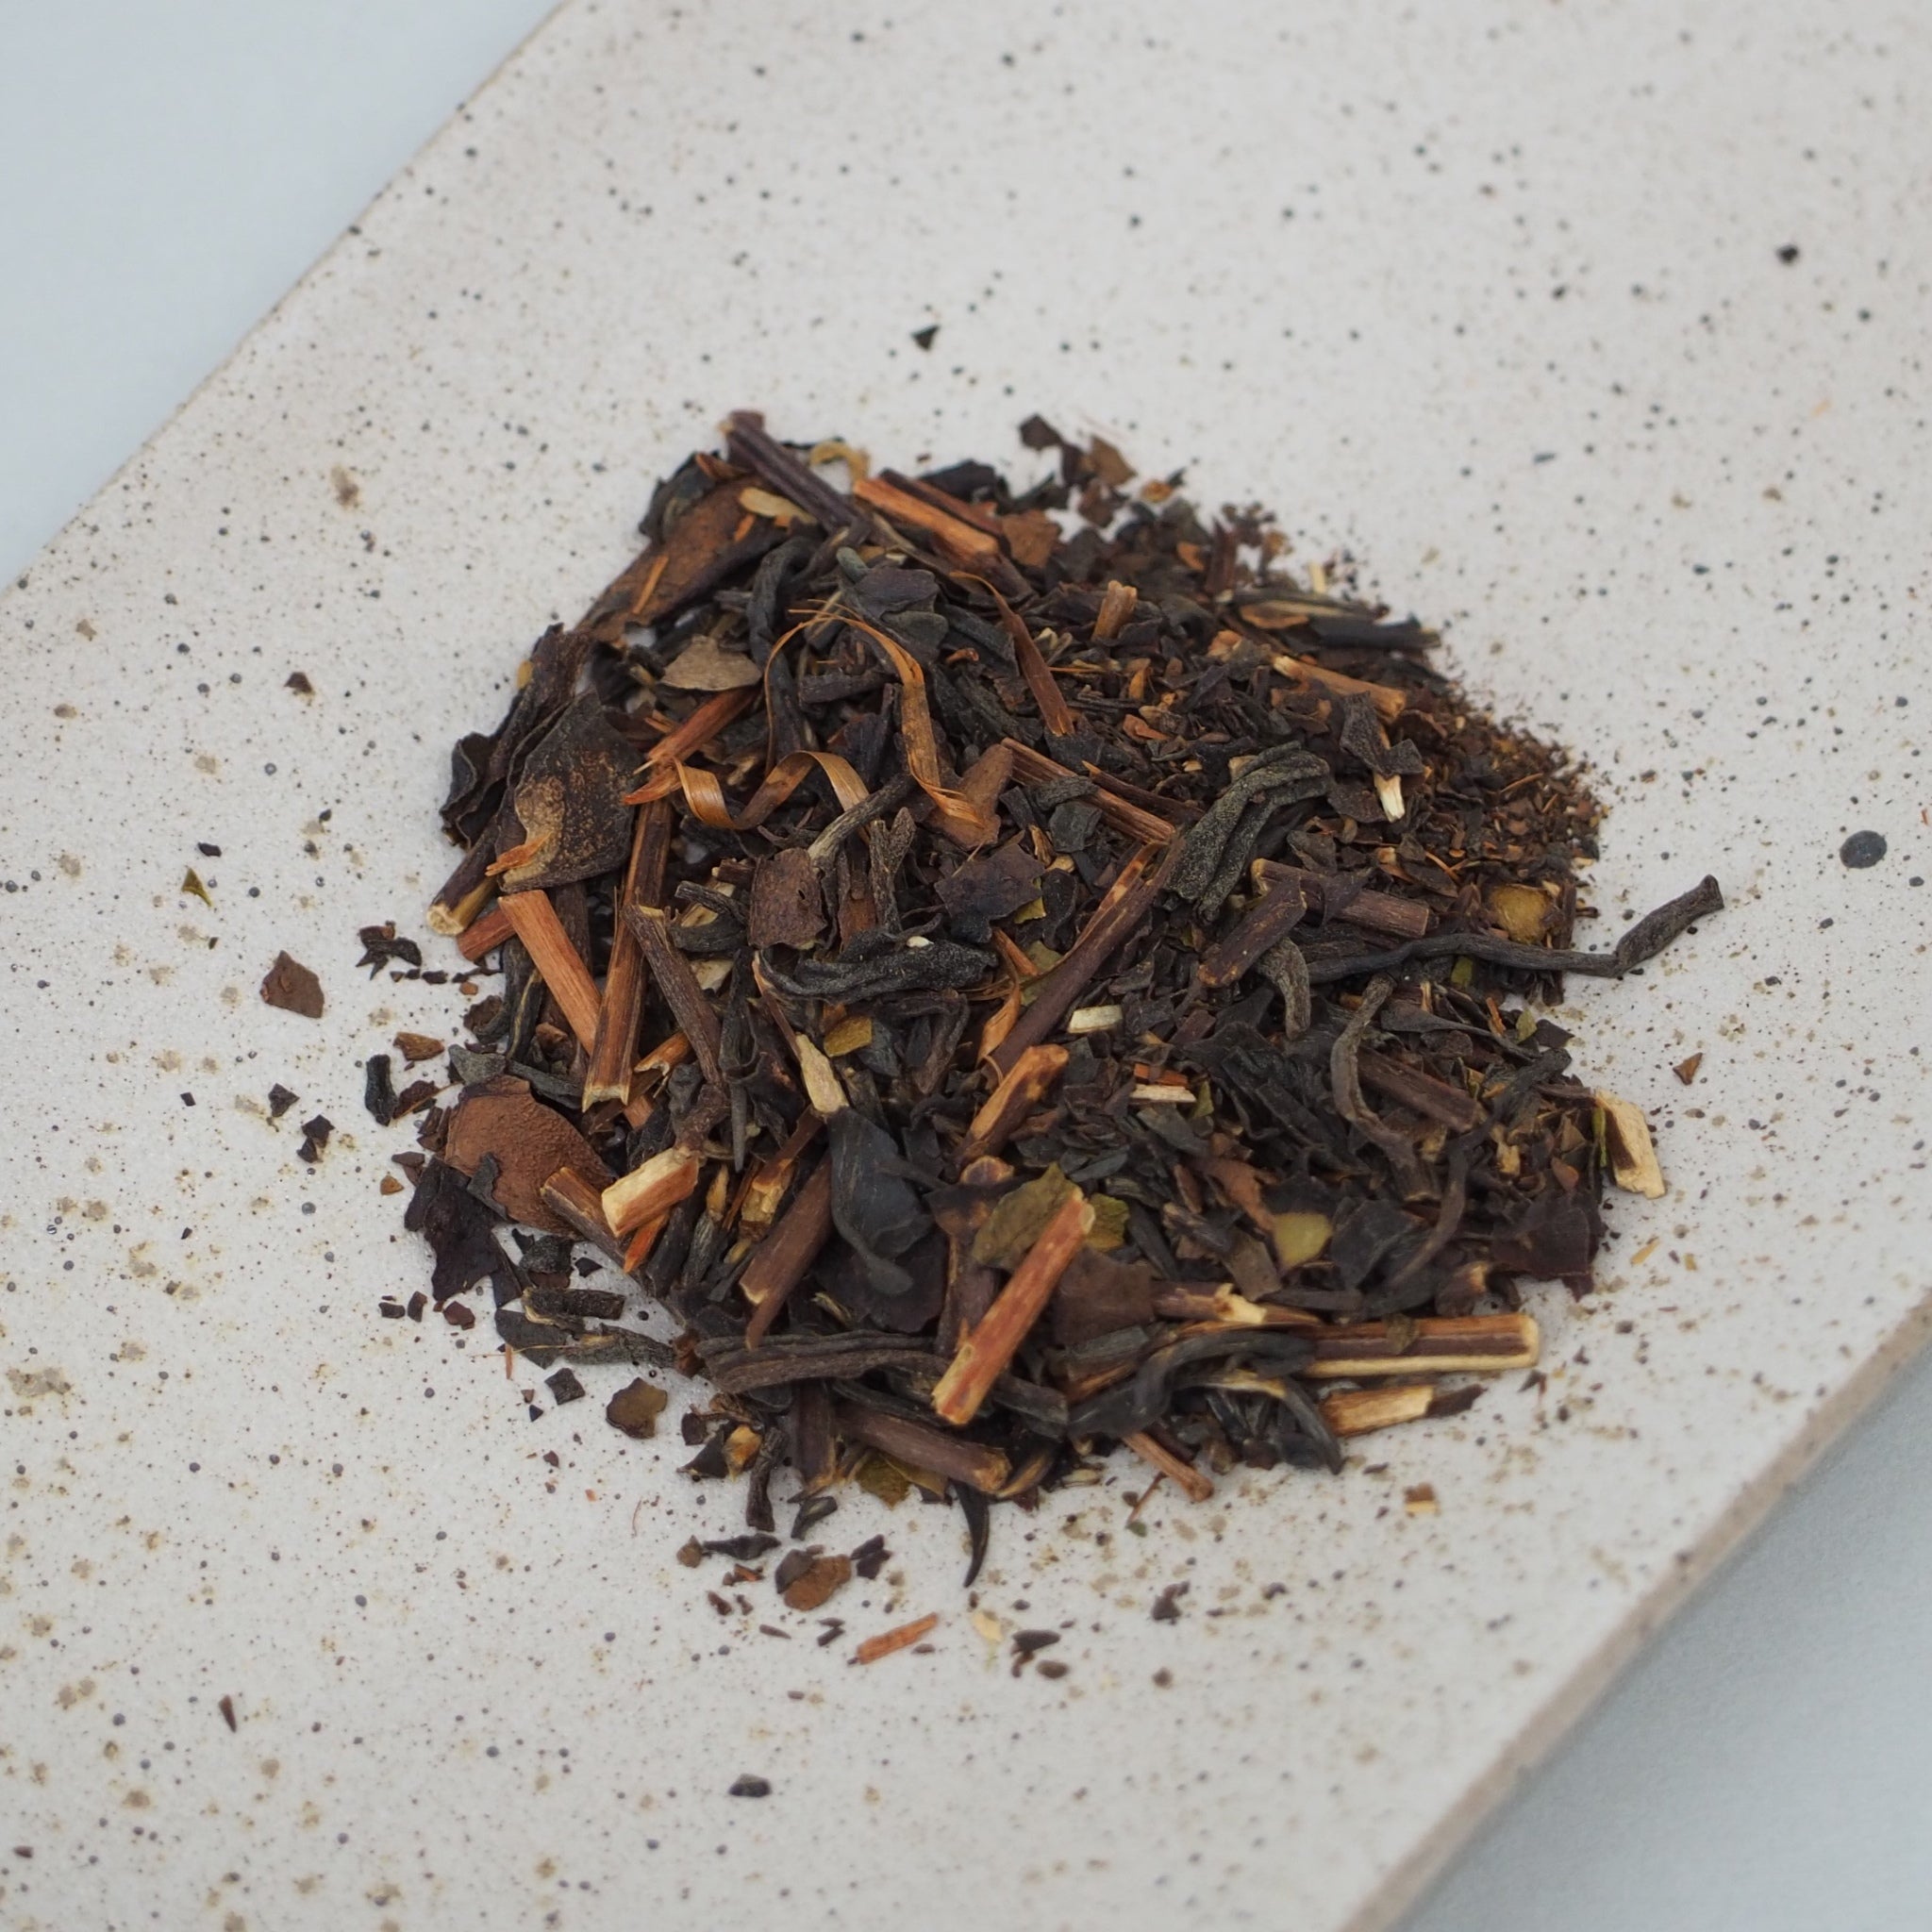 和紅茶の焙じ紅茶の茶葉画像です。一般的な紅茶よりも、茶葉は少し大きめにカットされていて、茶葉は濃い茶色、茎は薄い茶色です。